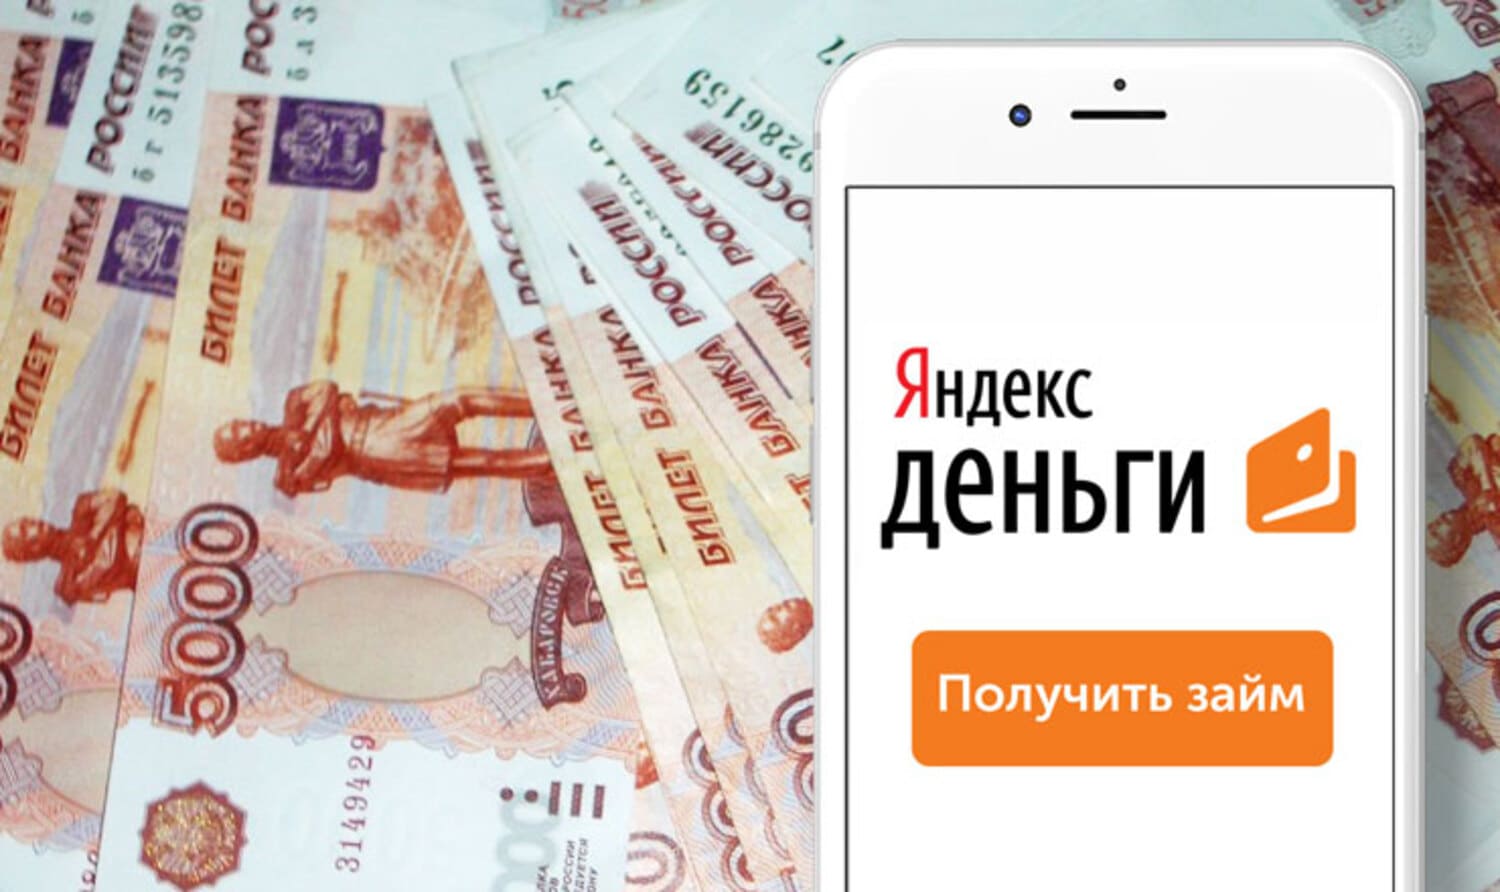 Что необходимо для получения займа на Яндекс.Деньги